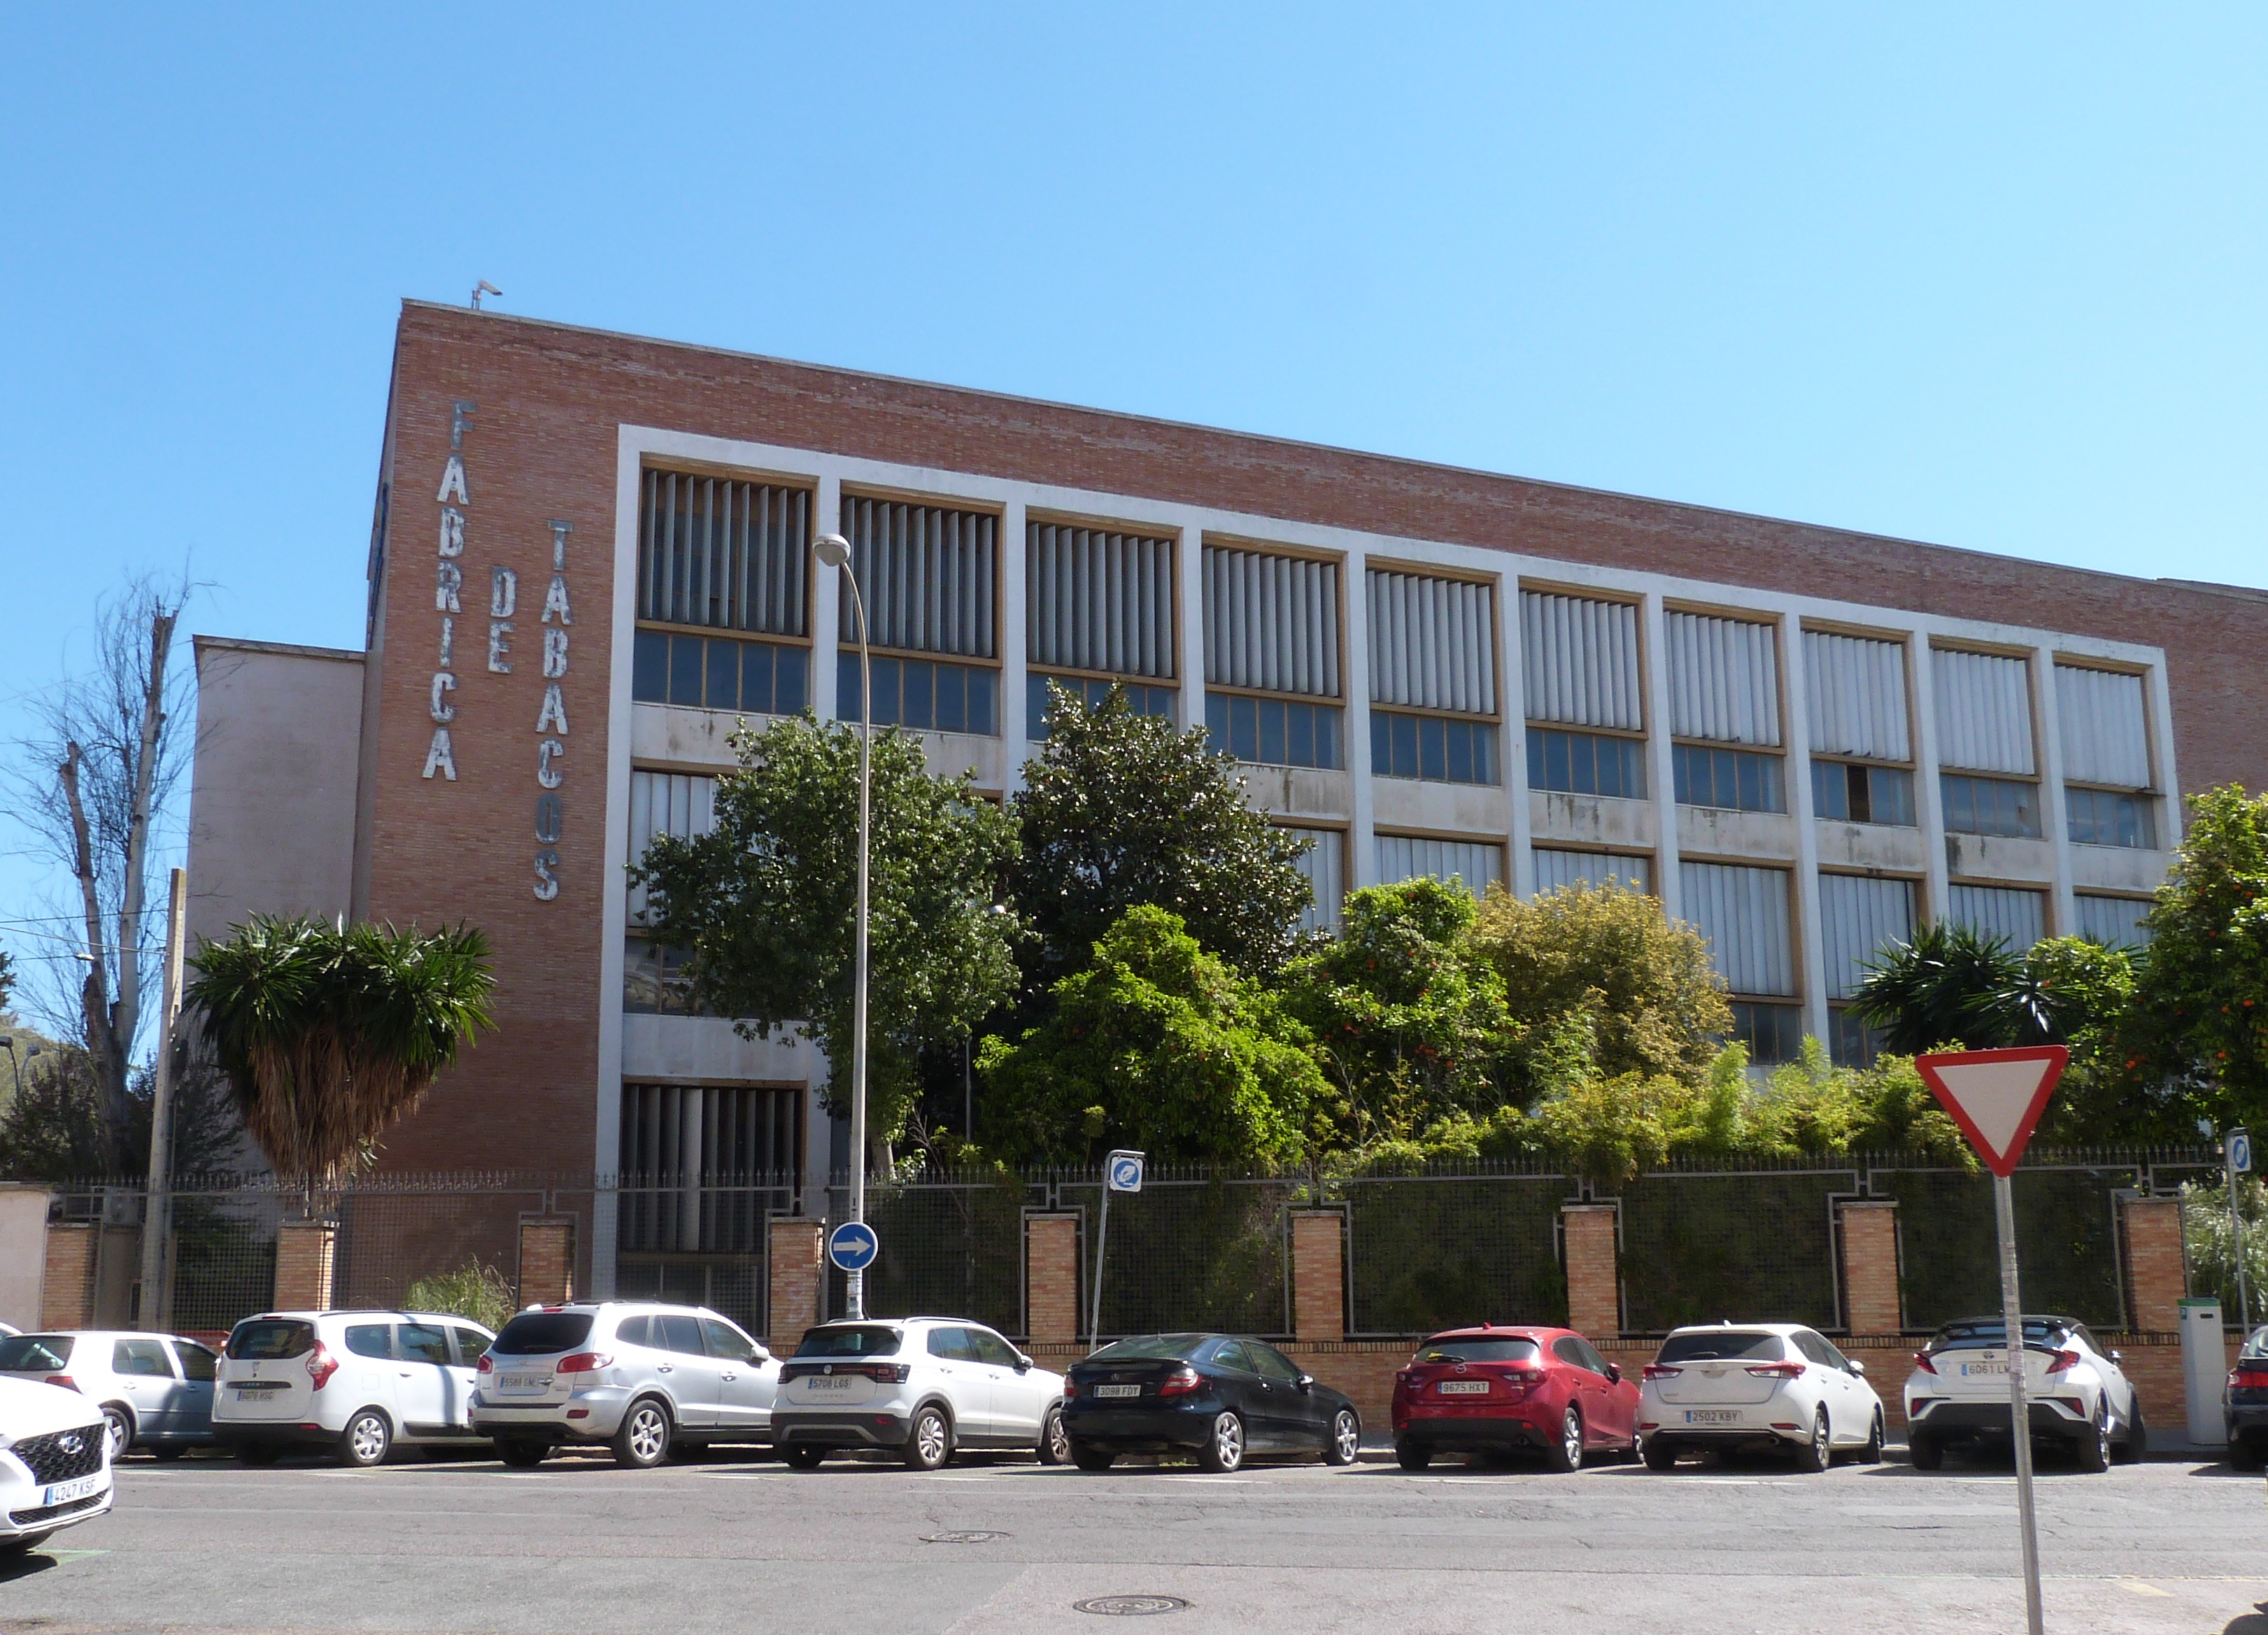 1 Antigua fabrica de Tabacos de Altadis en Sevilla 2021Archivo de la Autora